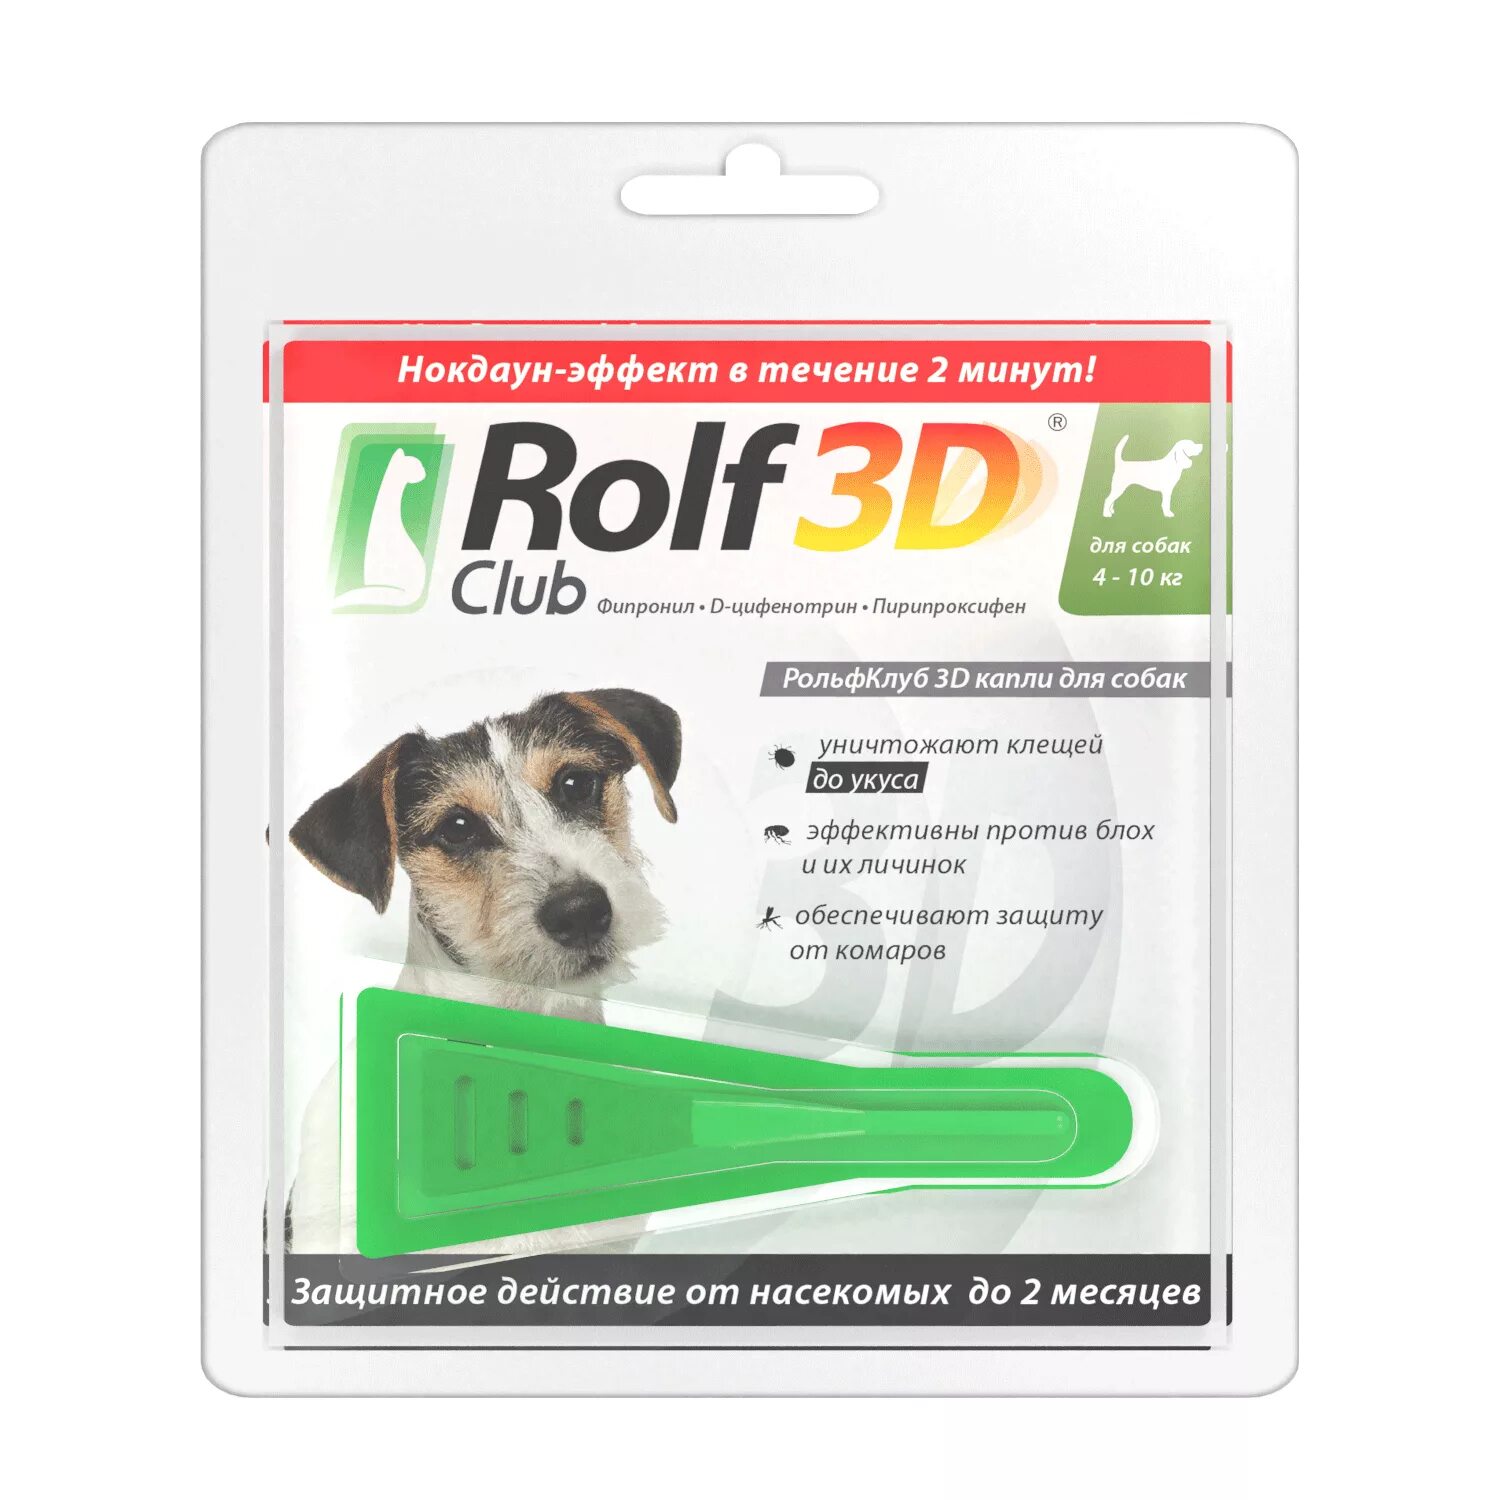 Капли от клещей для собак РОЛЬФ 3д. Капли от клещей для собак Rolf Club 3d. РОЛЬФ 3д капли для собак 4-10 кг. Rolf 3d для собак. Эффективные капли от блох